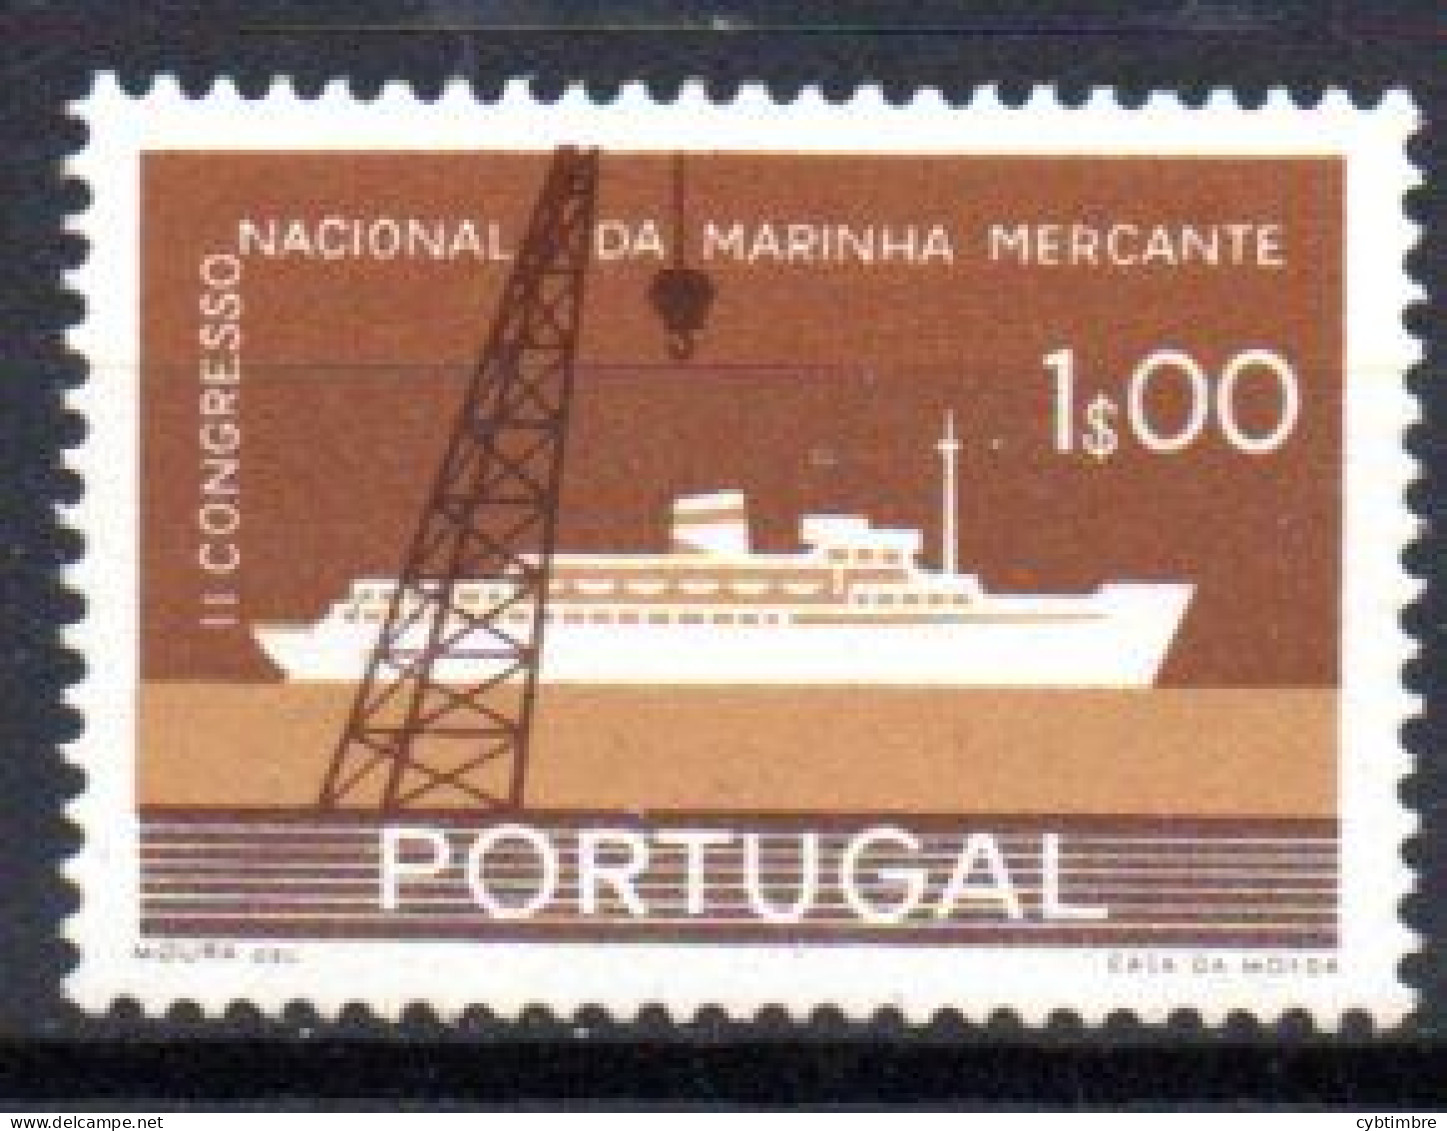 Portugal: Yvert N° 851*; Marine Marchande; Bateau; Cote 9.00€ - Unused Stamps